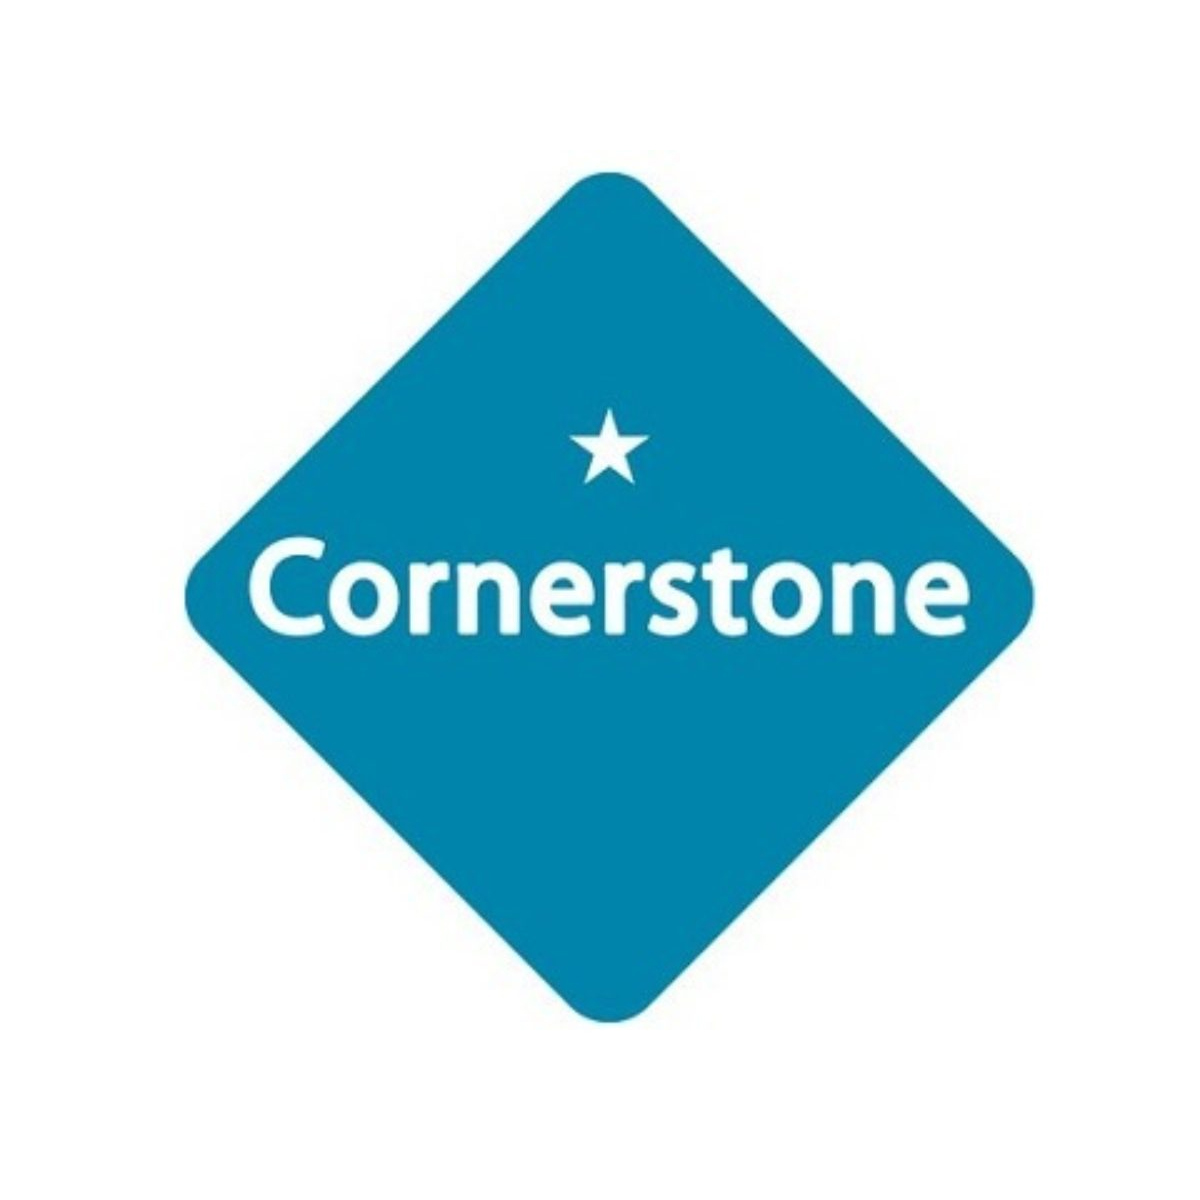 Cornerstone - Community Charity